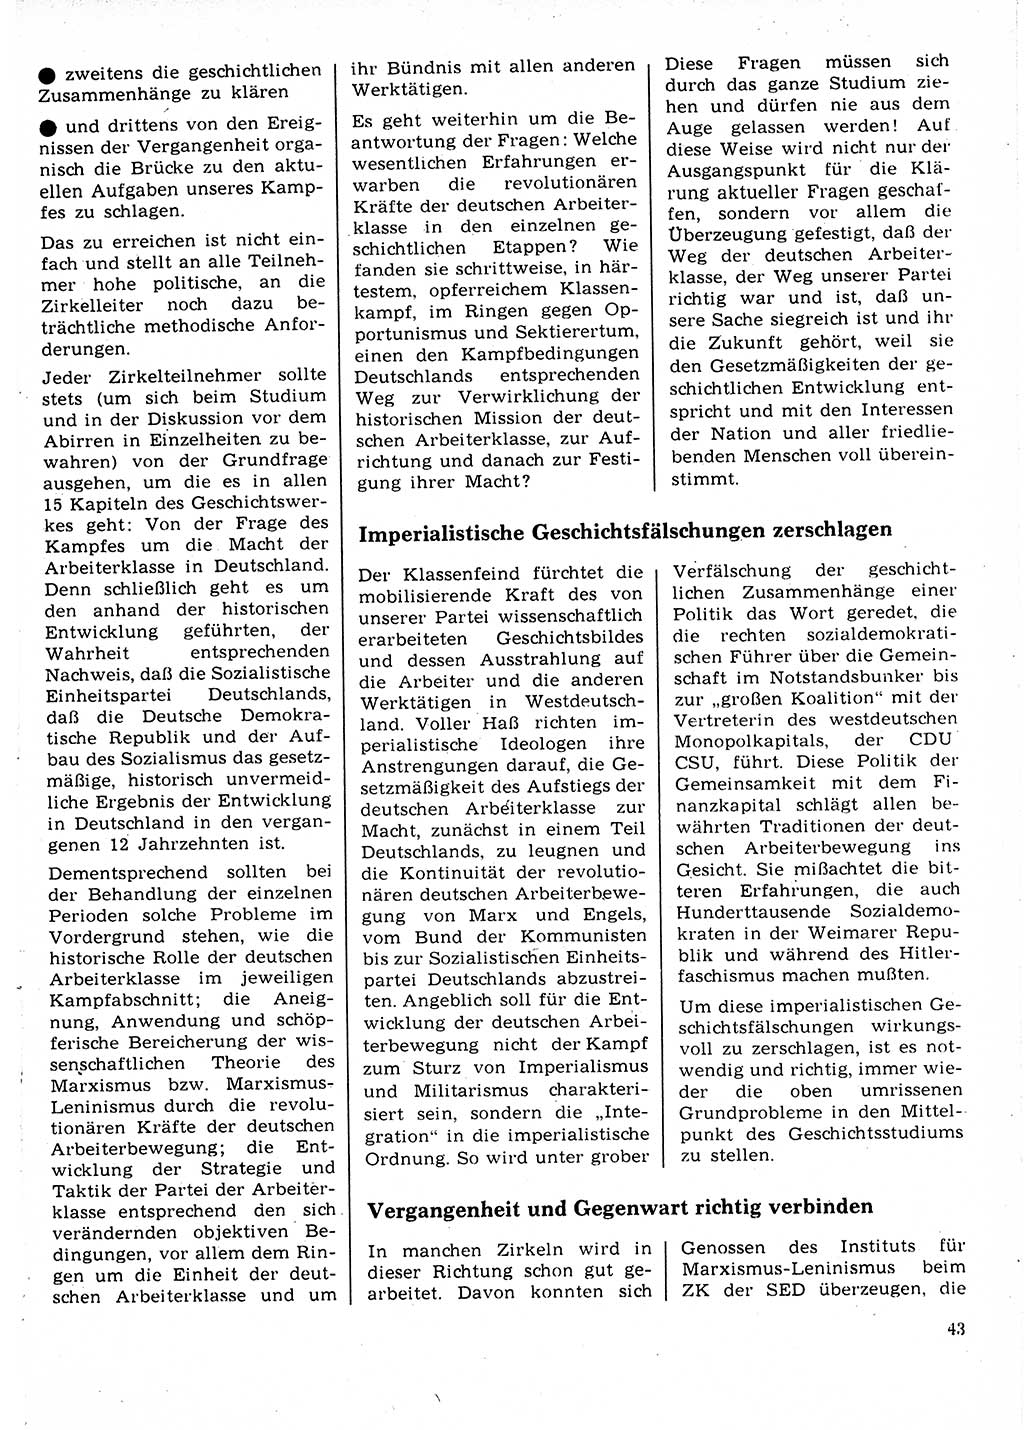 Neuer Weg (NW), Organ des Zentralkomitees (ZK) der SED (Sozialistische Einheitspartei Deutschlands) für Fragen des Parteilebens, 22. Jahrgang [Deutsche Demokratische Republik (DDR)] 1967, Seite 43 (NW ZK SED DDR 1967, S. 43)